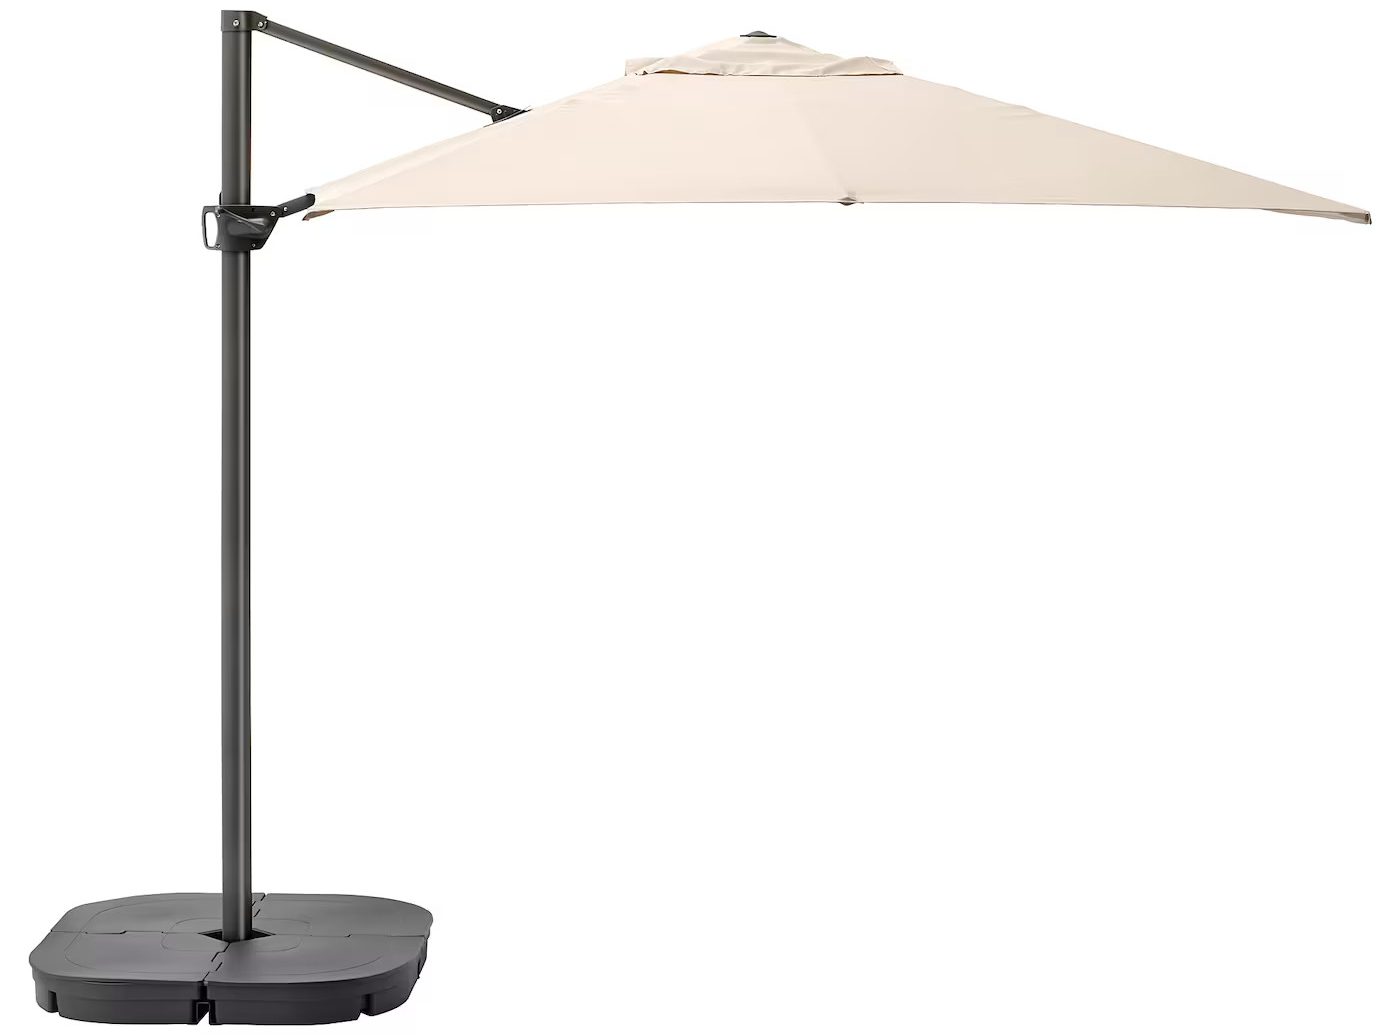 SEGLARÖ/SVARTÖ hanging umbrella by Ikea